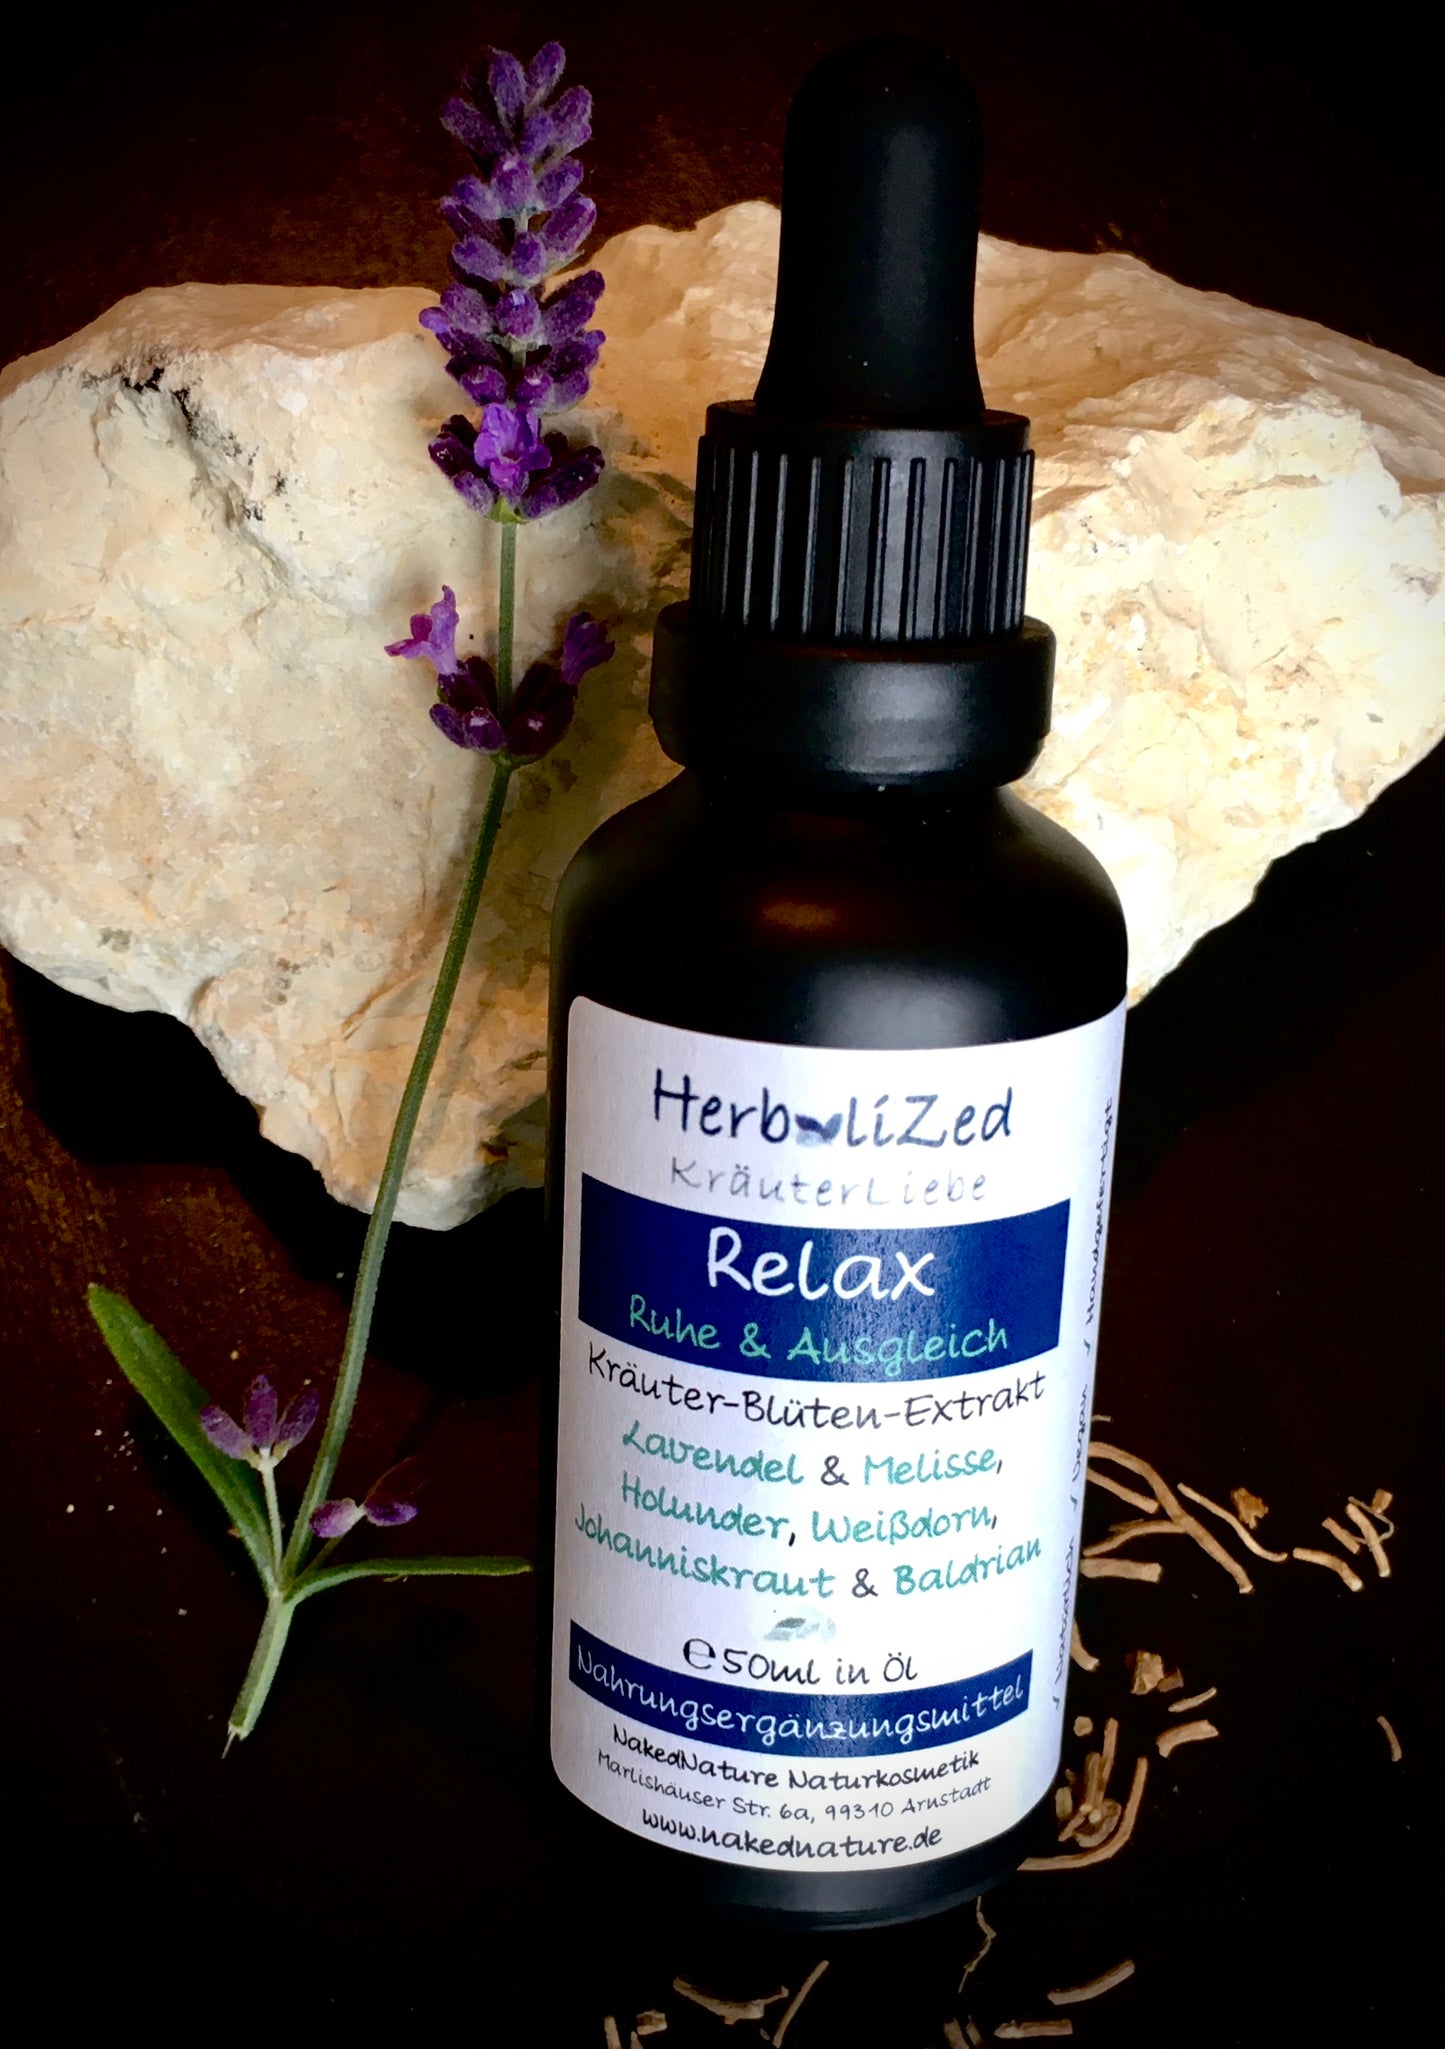 Herbalized Relax Ruhe & Ausgleich Kräuterextrakt, 50ml